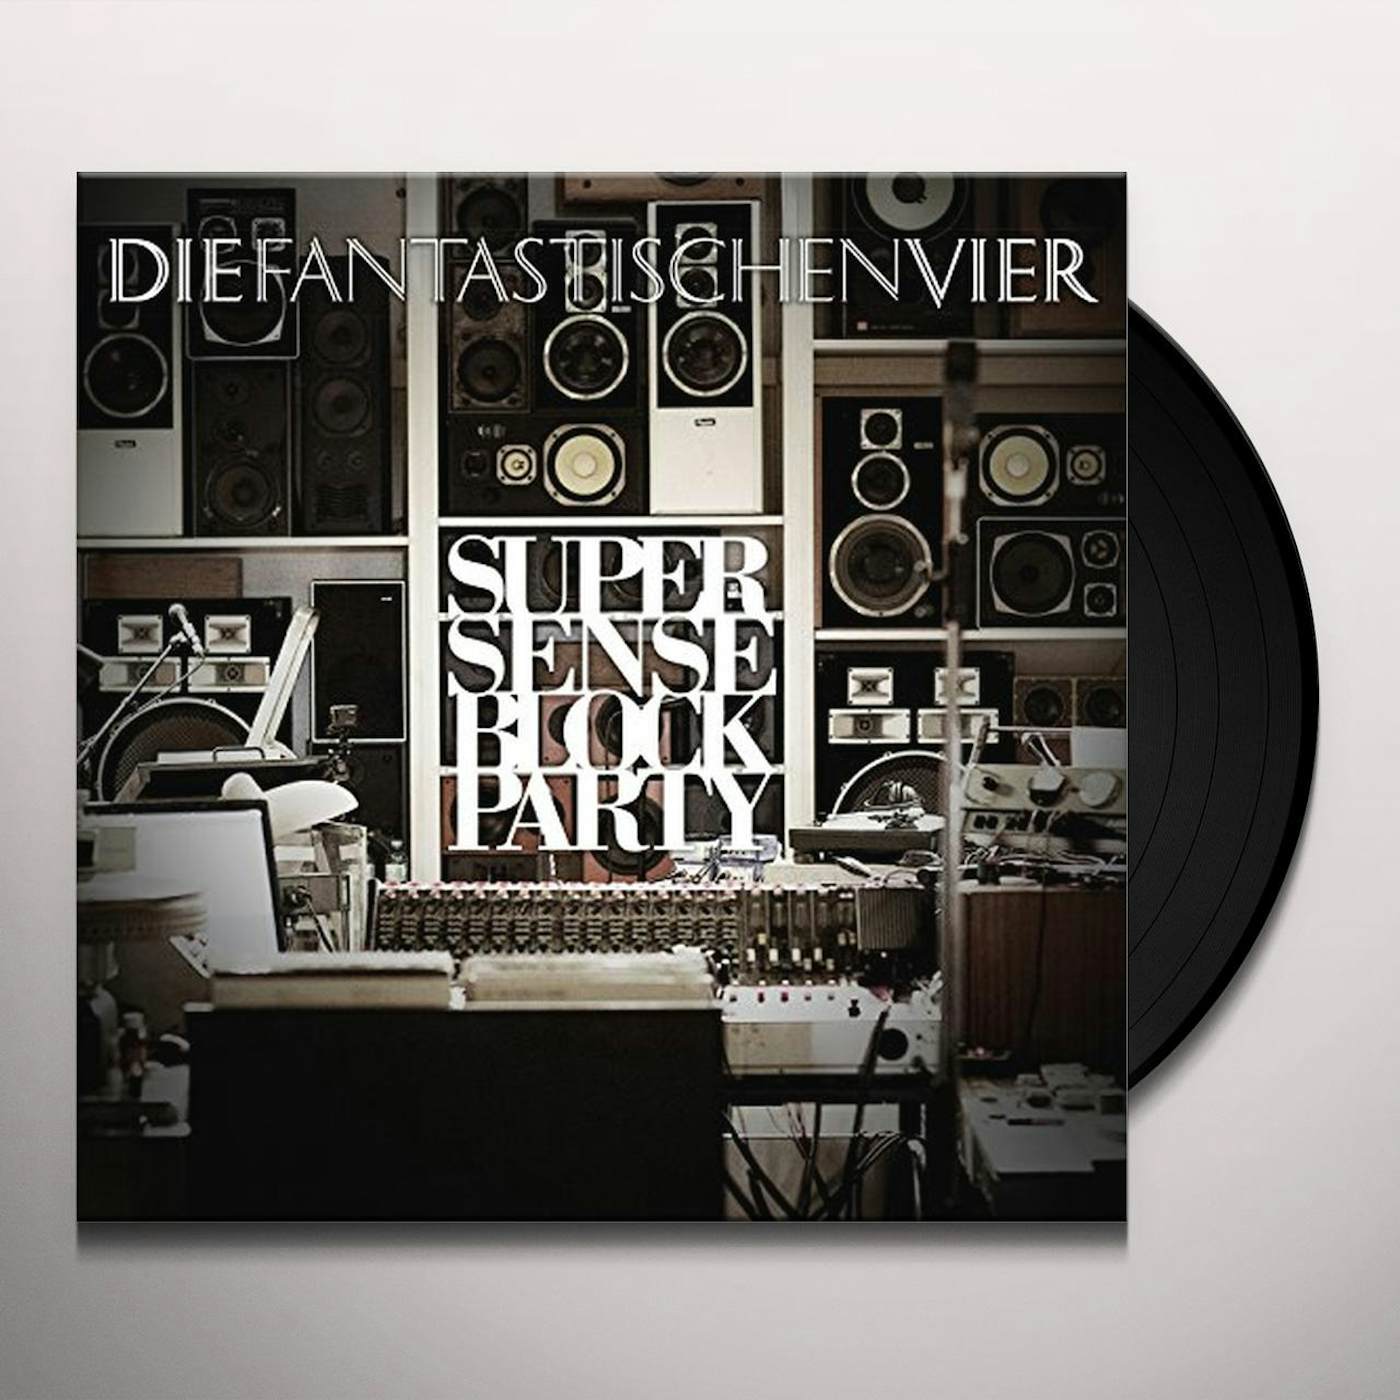 Fantastischen Vier Supersense Block Party Vinyl Record